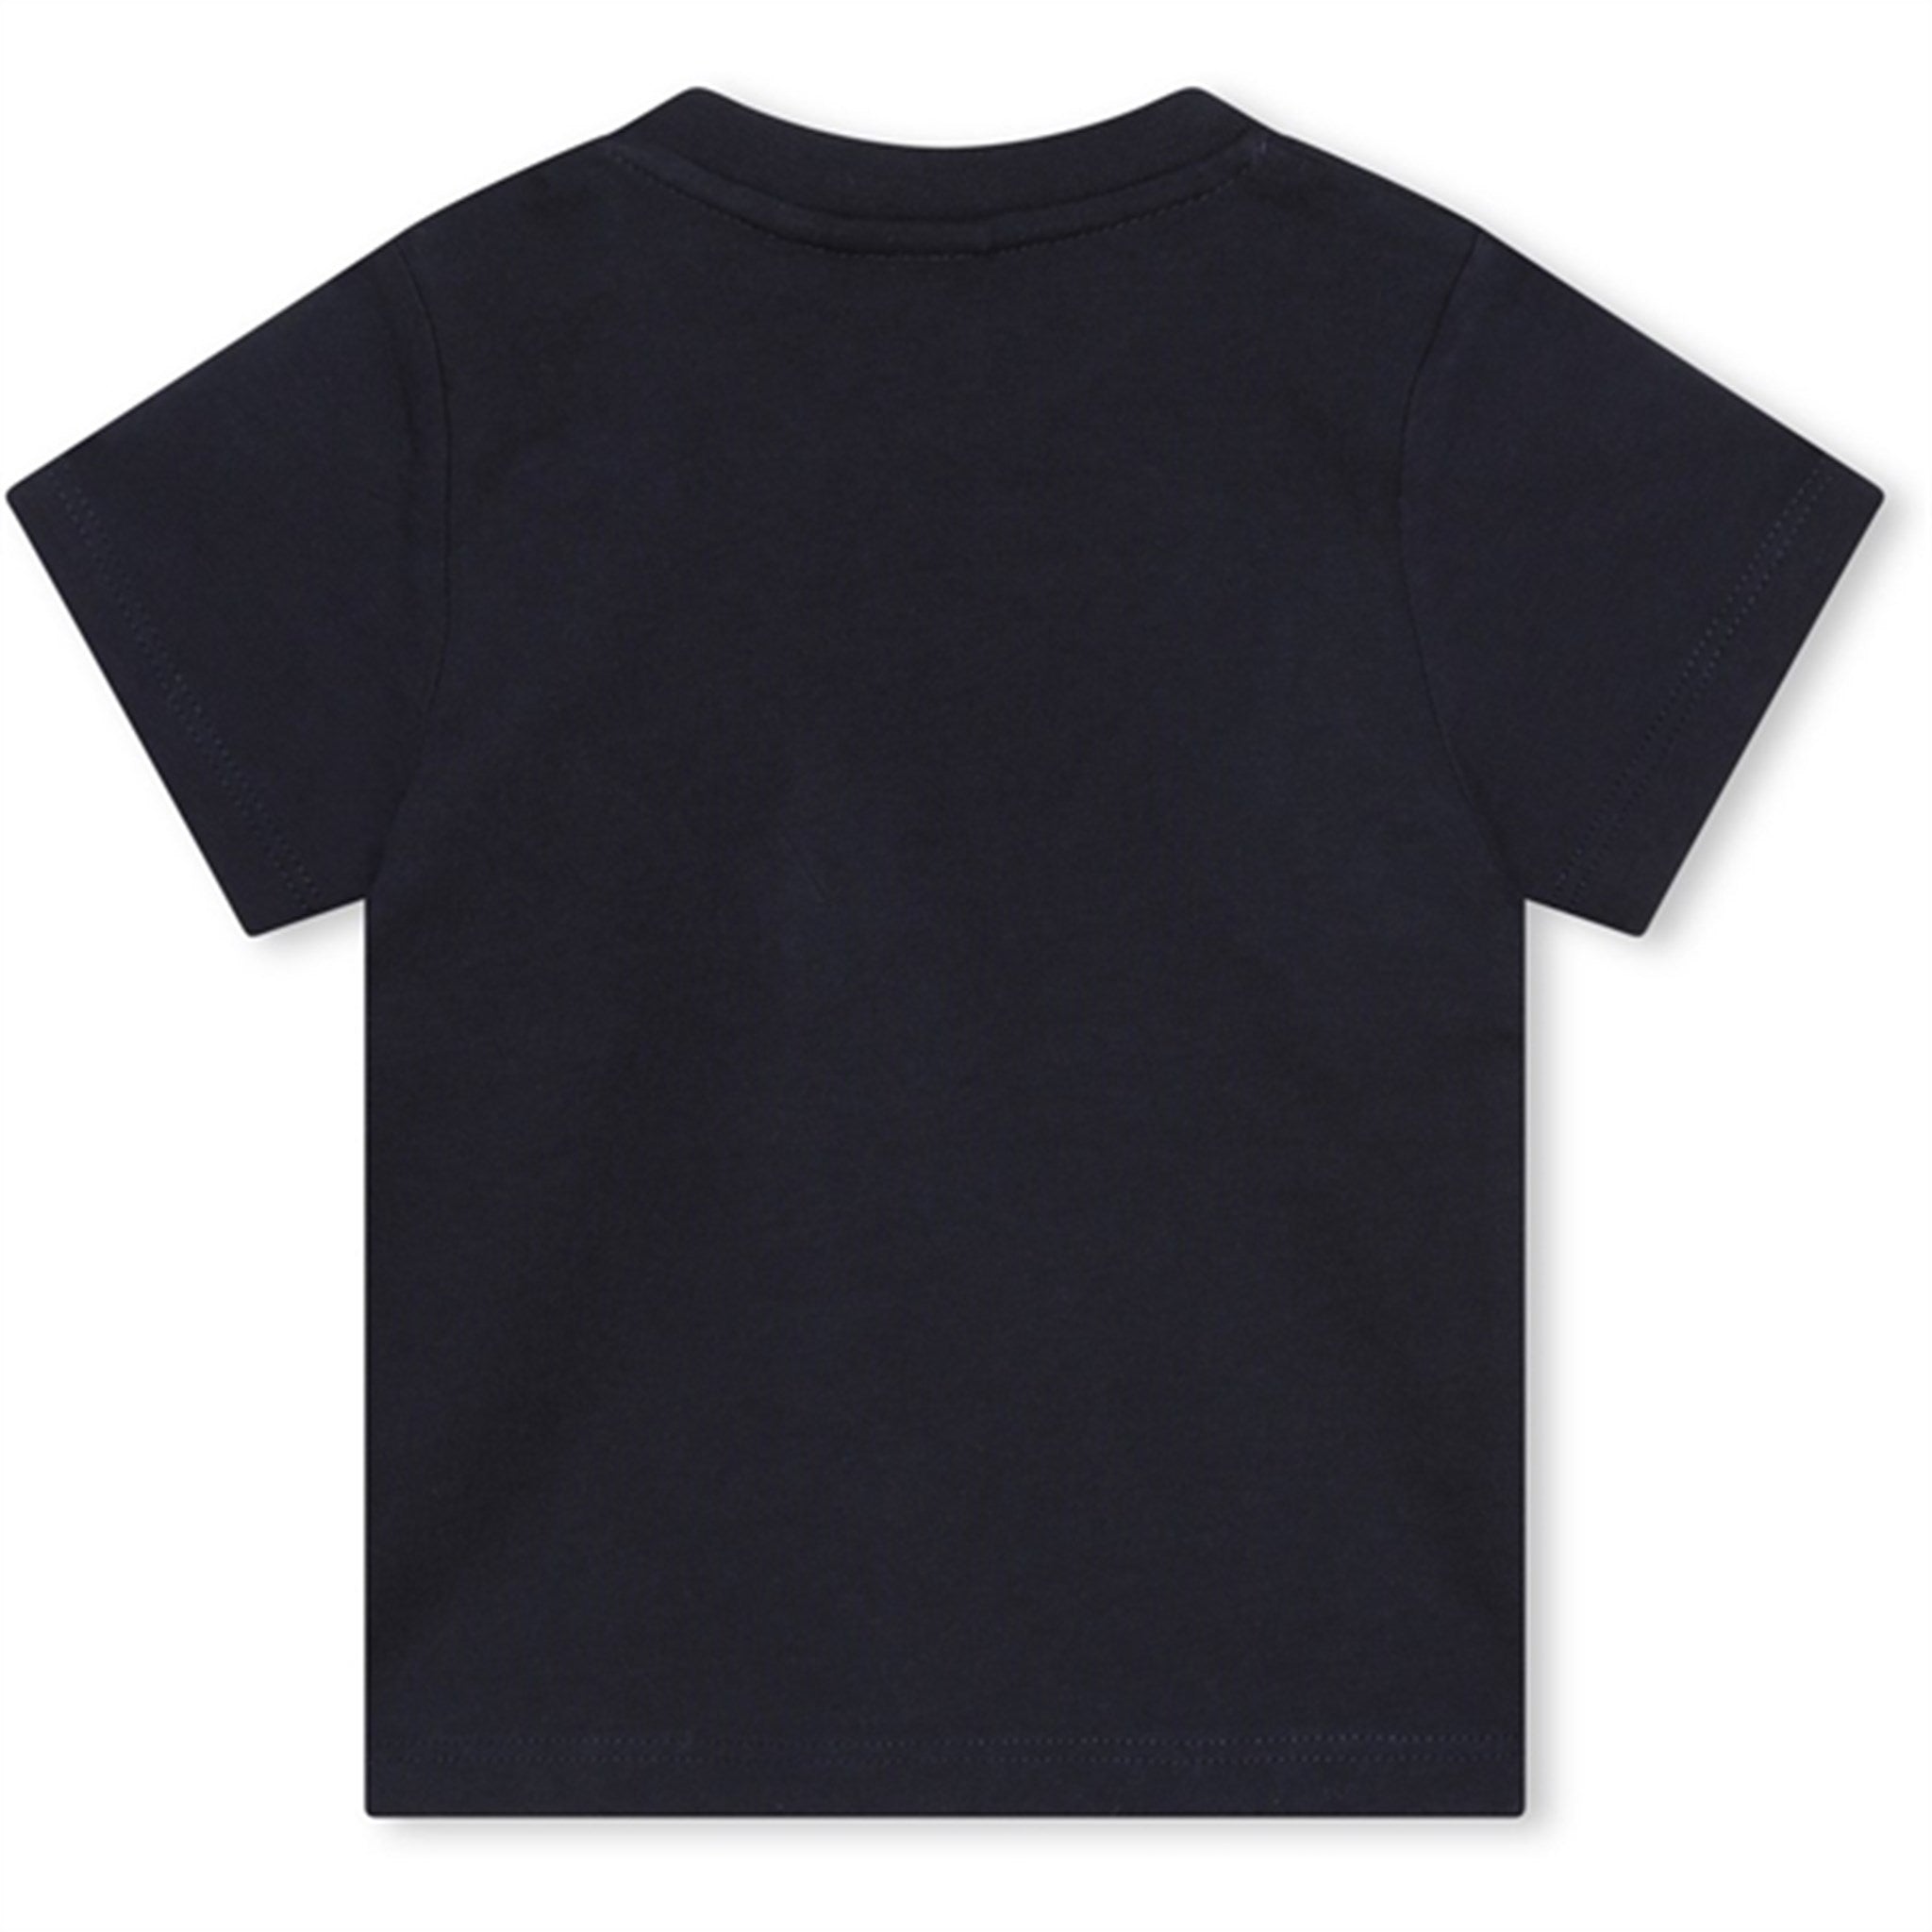 Hugo Boss Baby T-shirt Navy 2